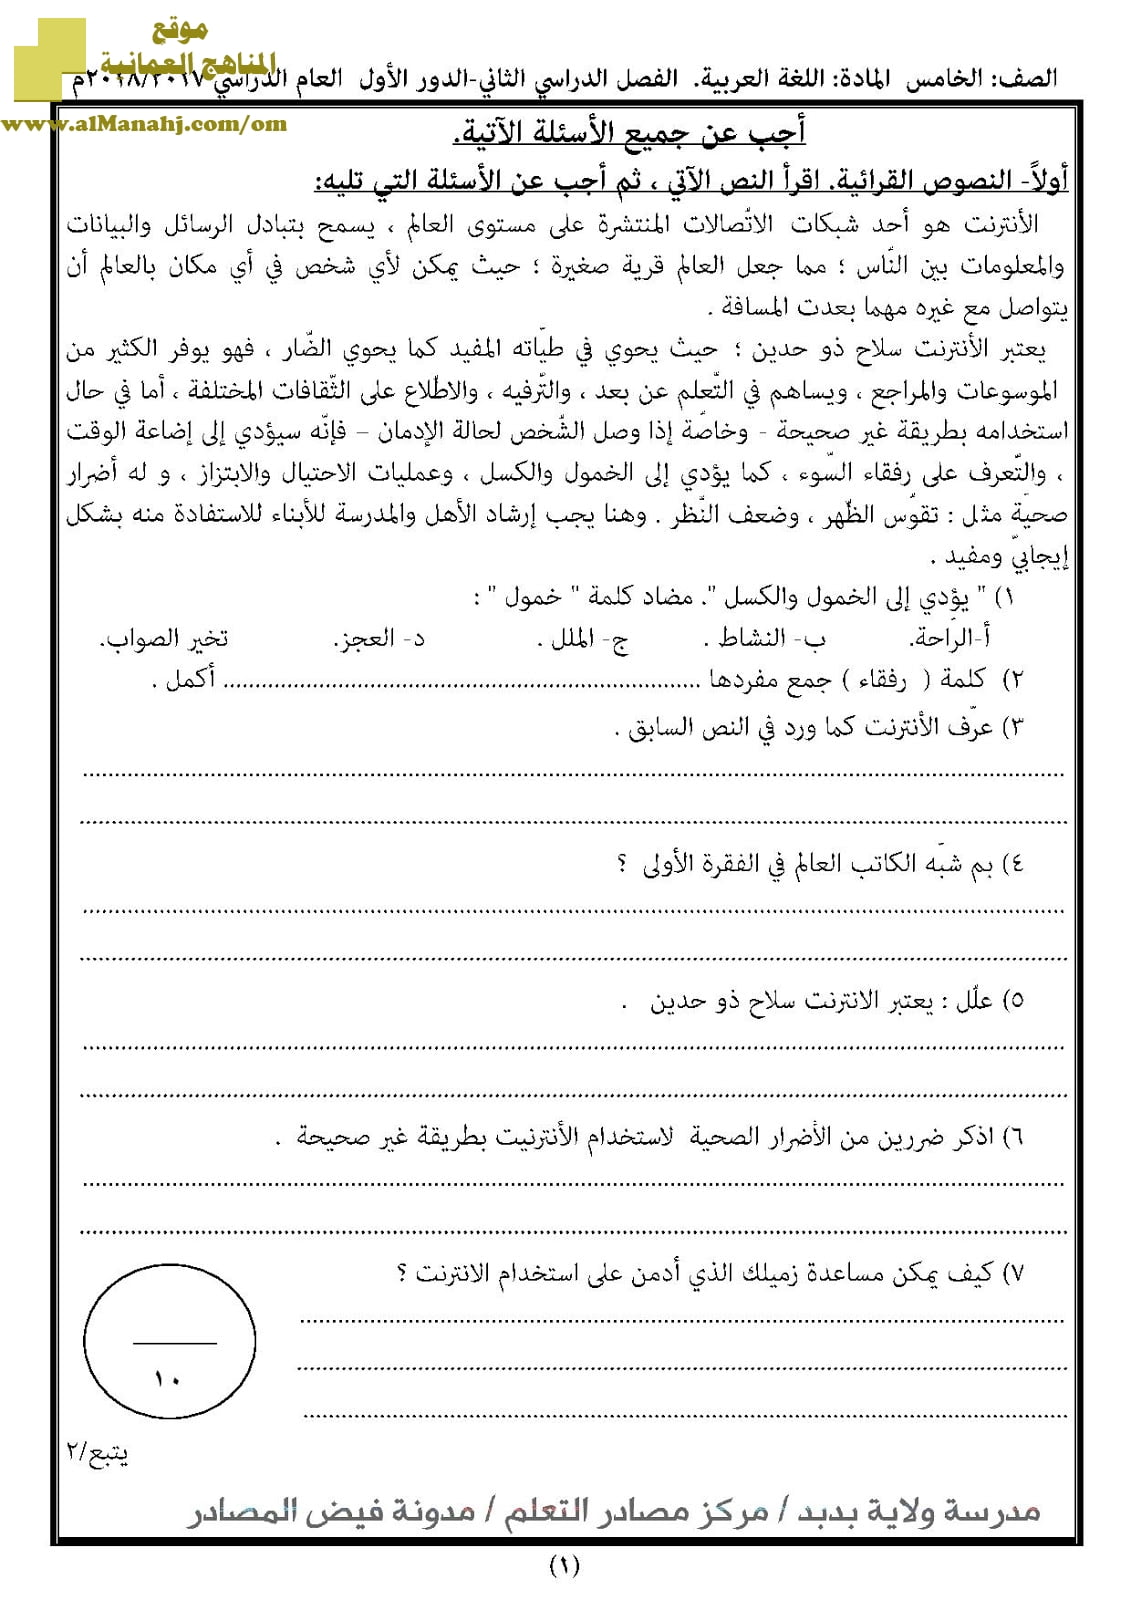 أسئلة الامتحان الرسمية للفصل الدراسي الثاني الدور الأول (لغة عربية) الخامس